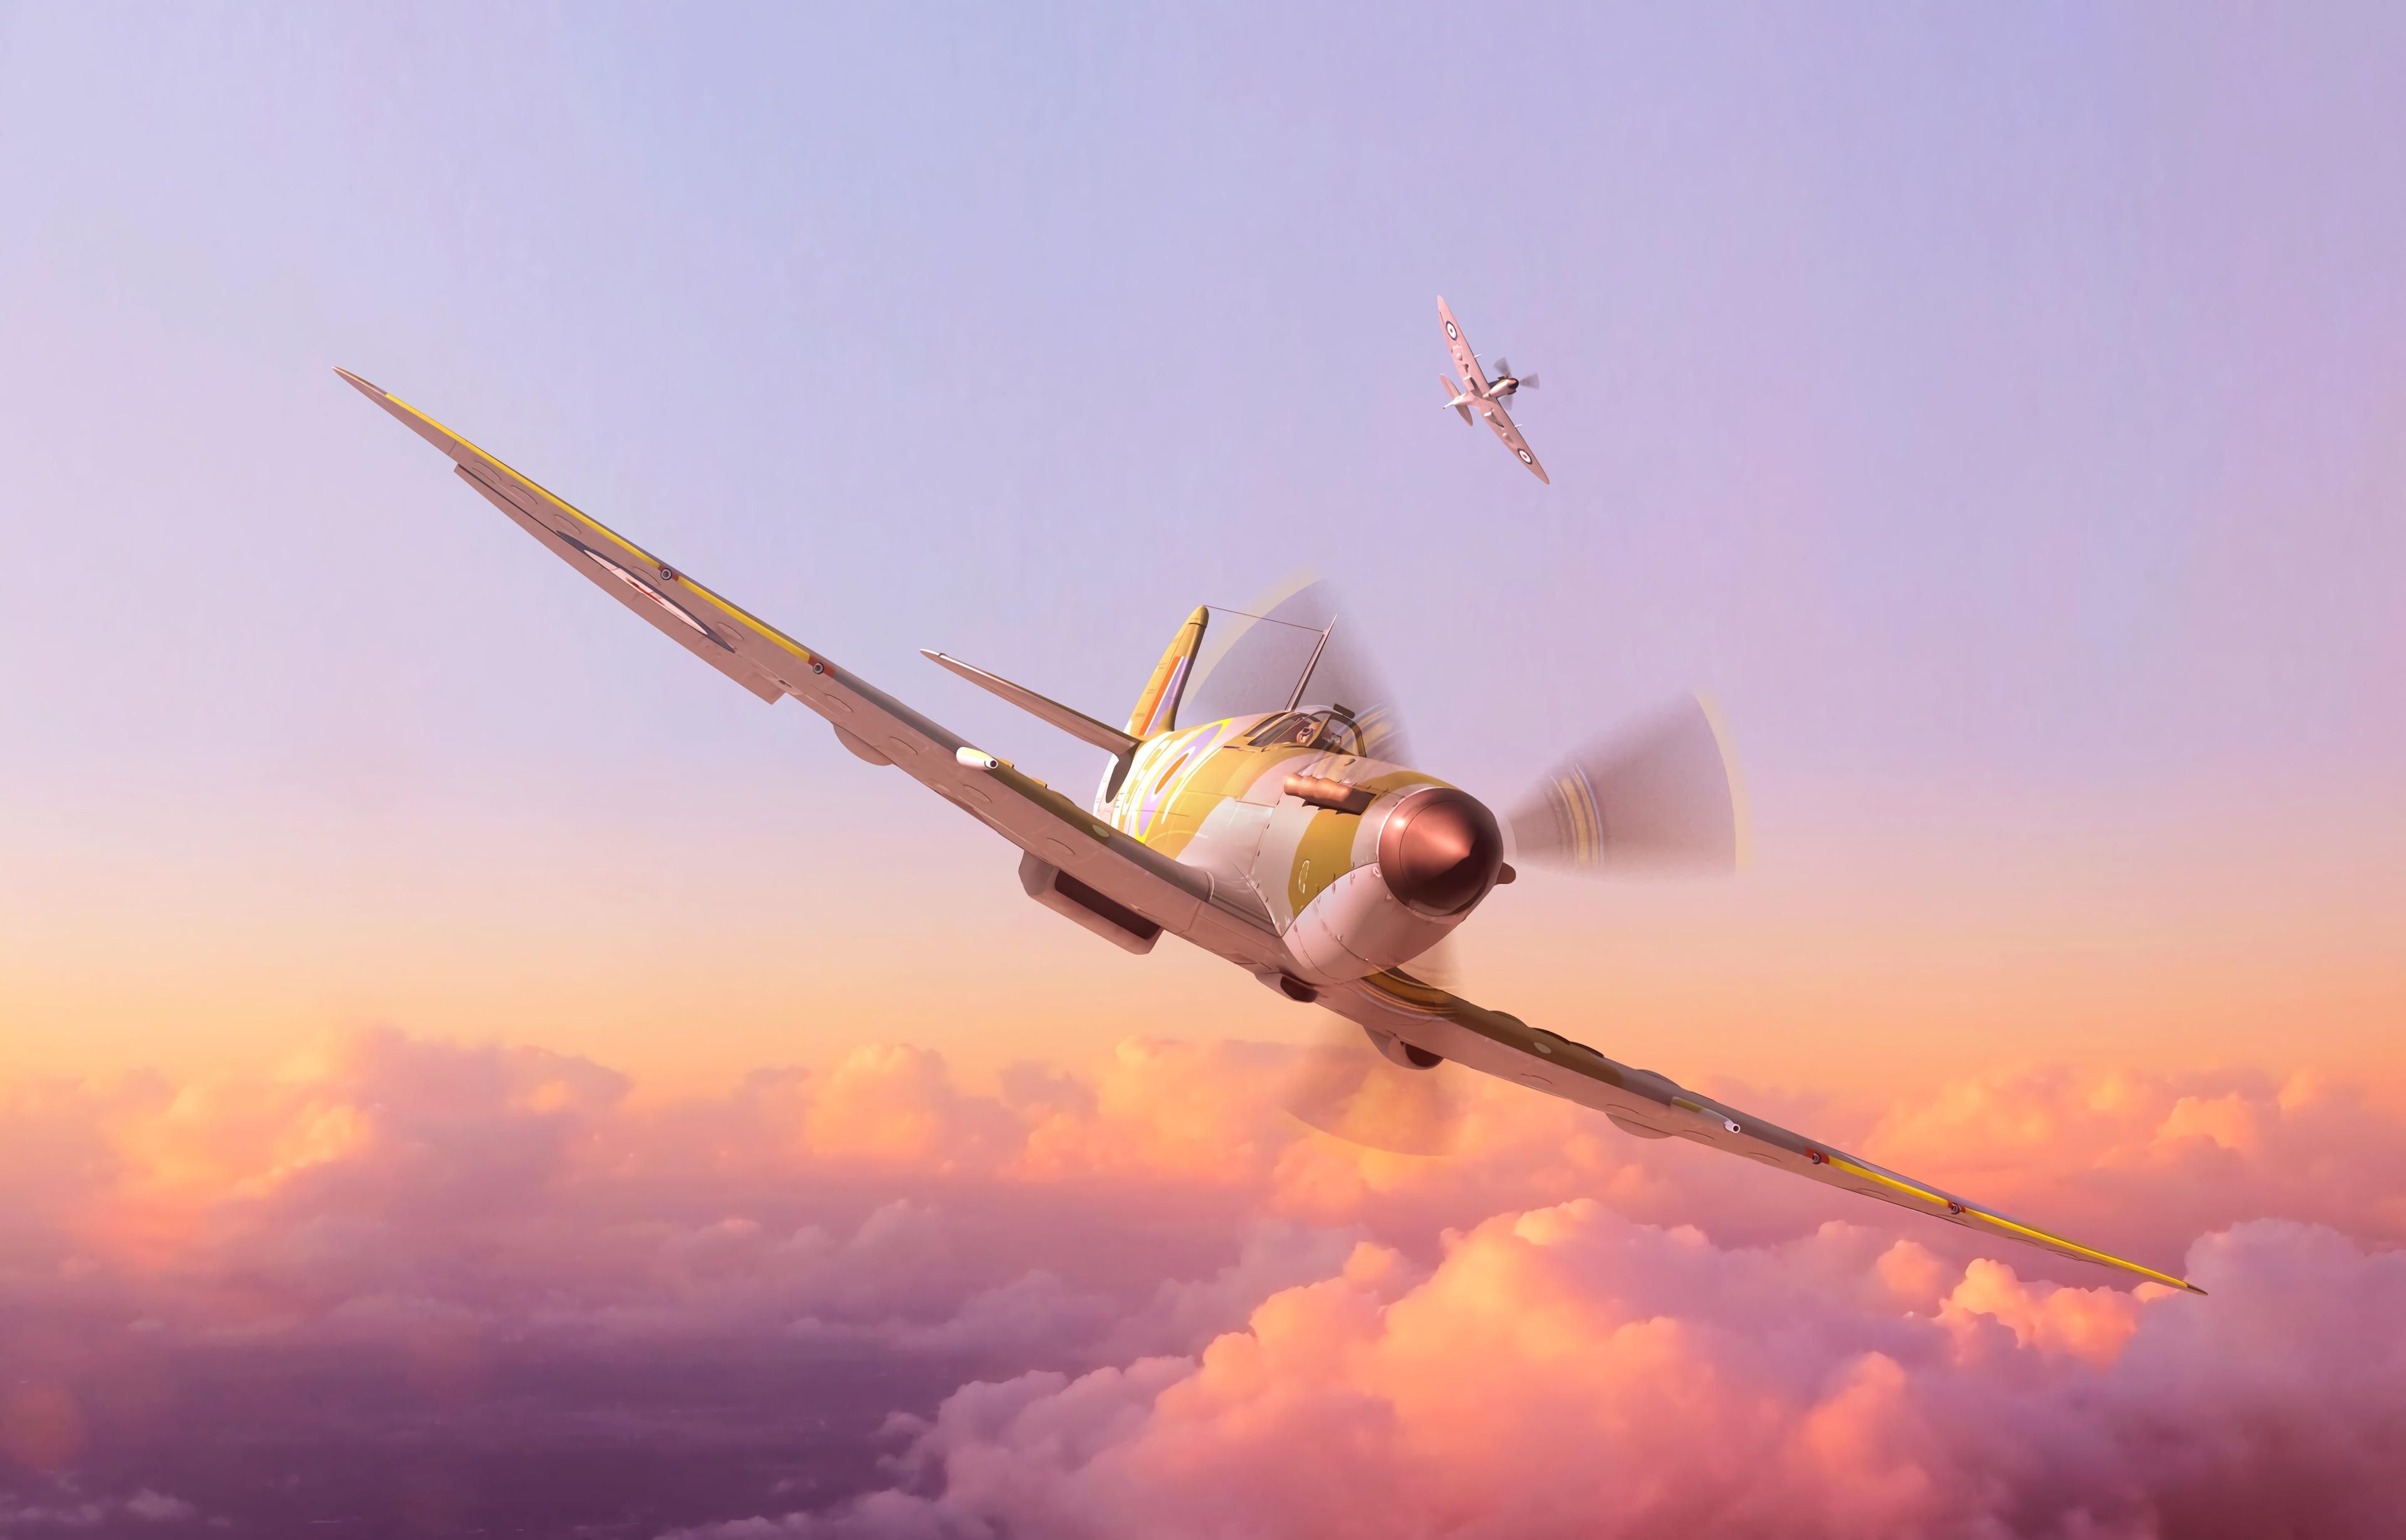 wallpaper plane, propeller, art, flight, sky, height HD, Widescreen, High Definition